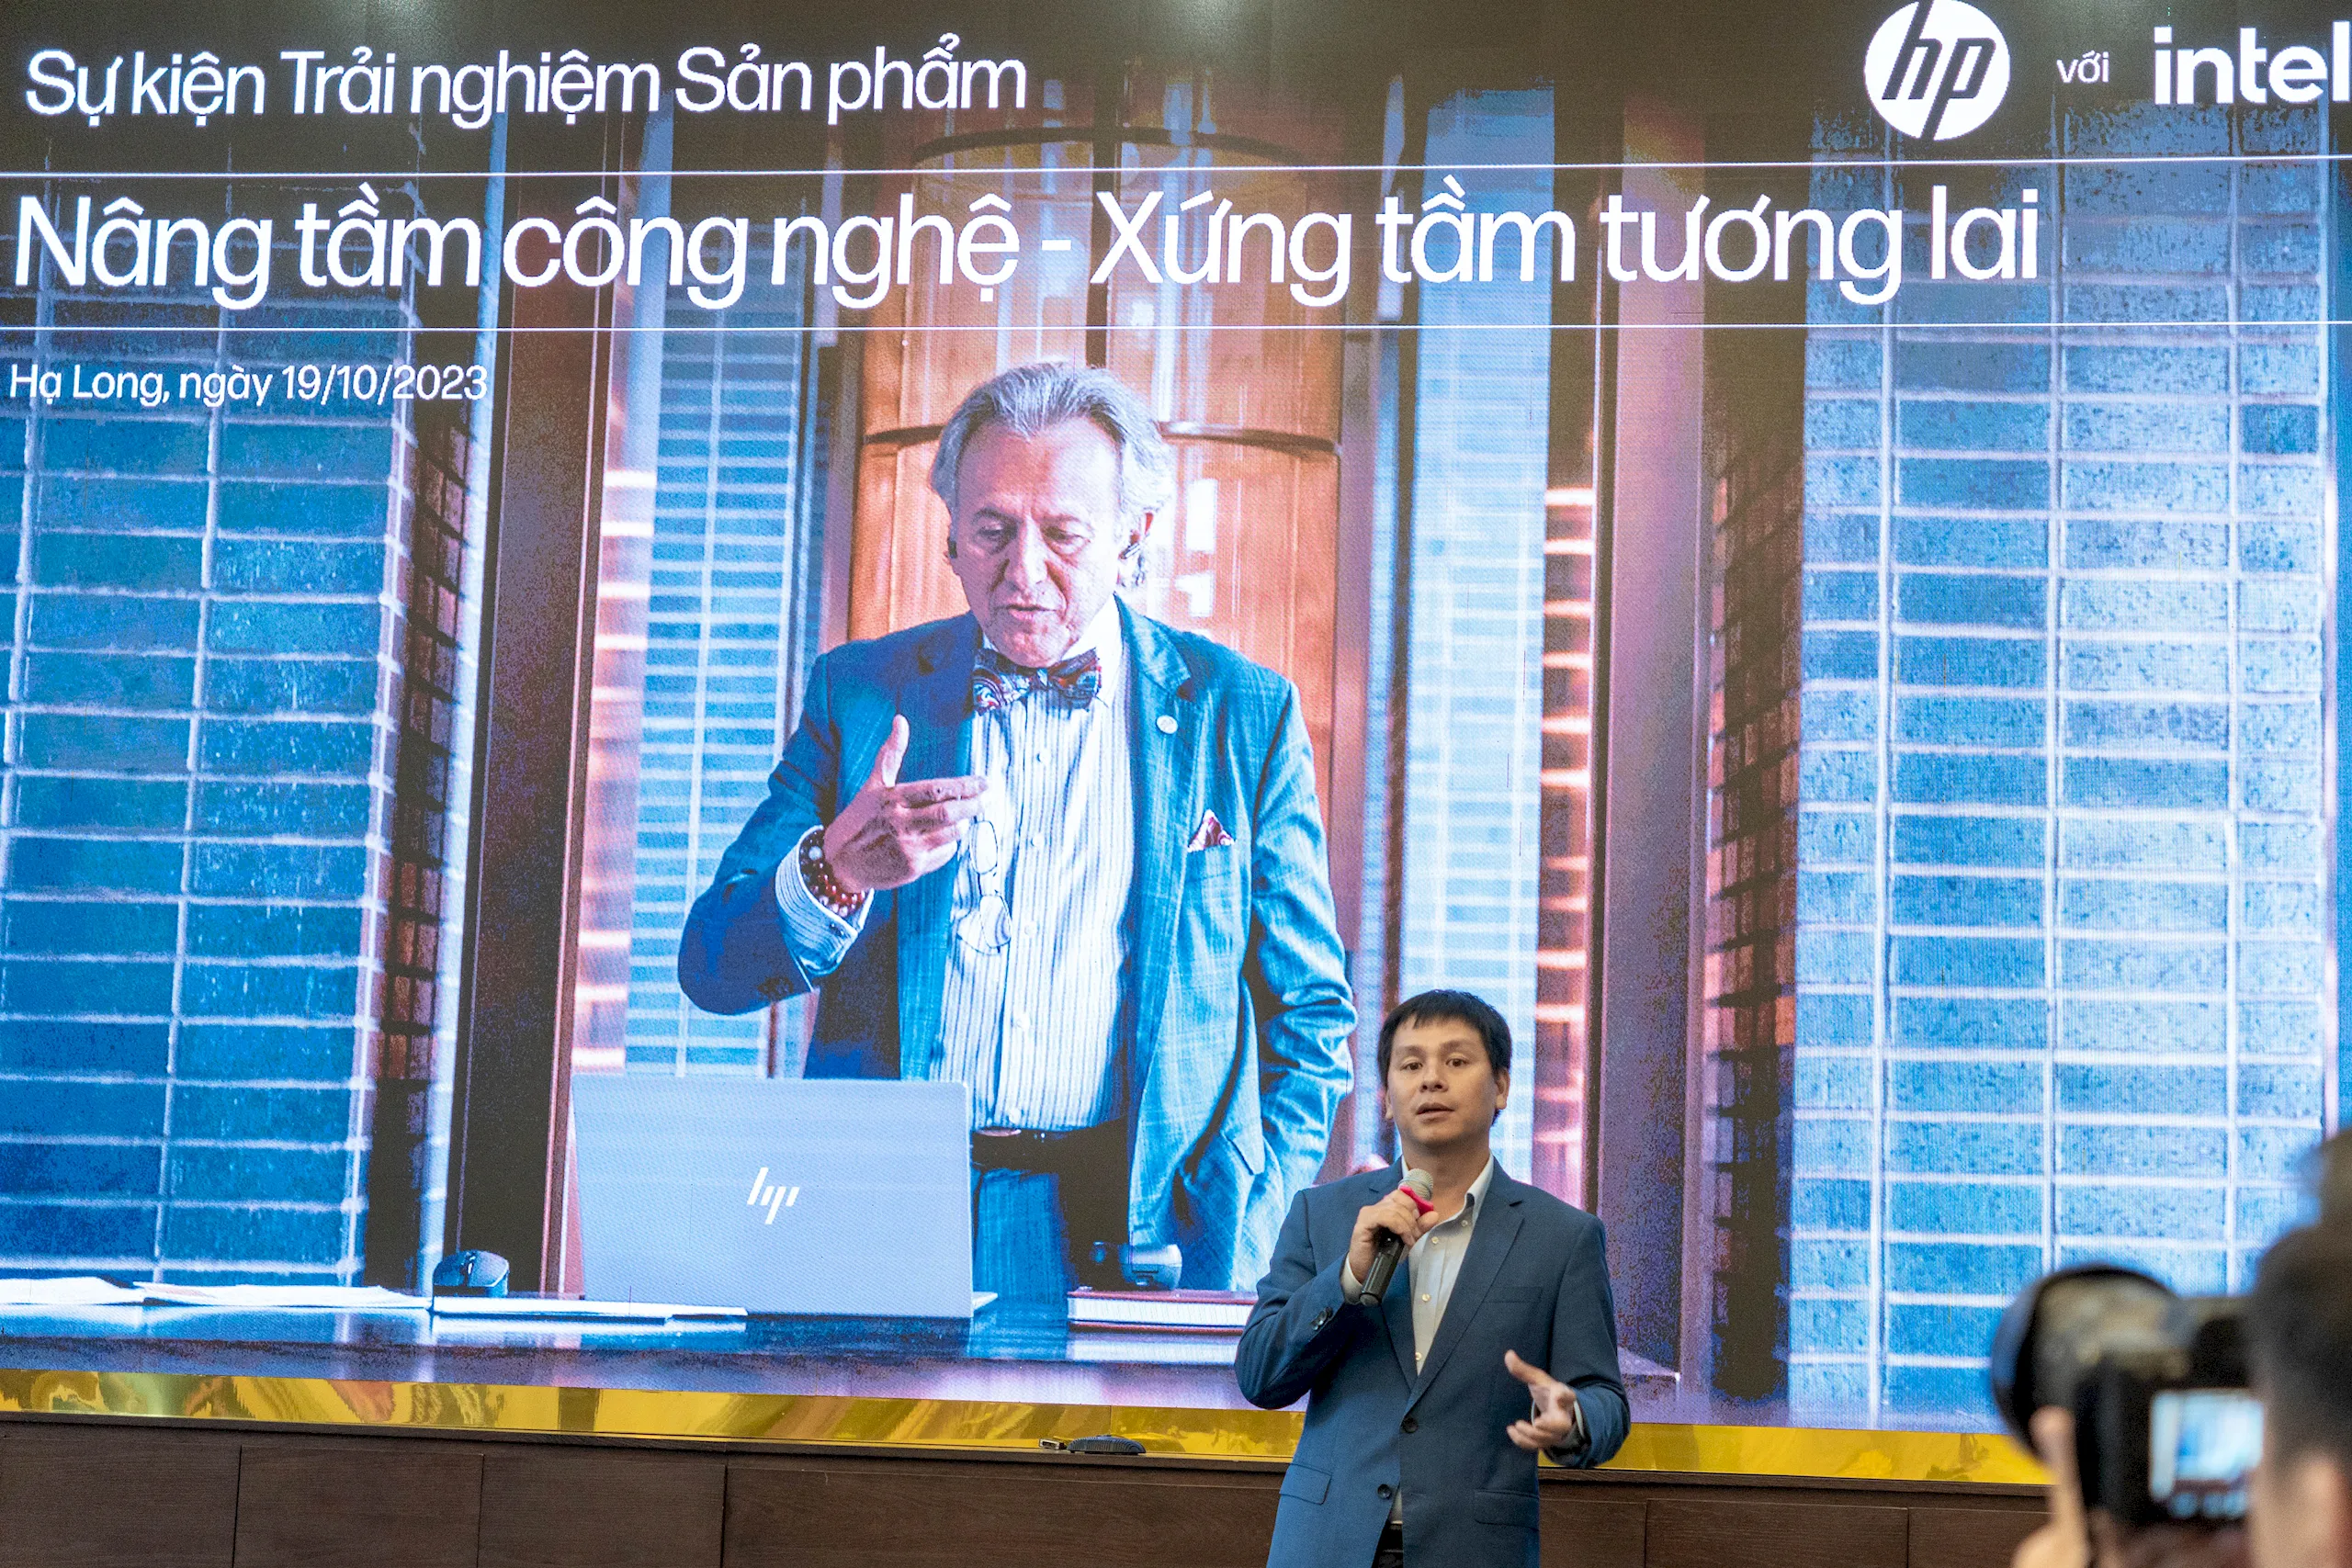 HP Việt Nam tổ chức sự kiện trải nghiệm các dòng sản phẩm mới tại Hạ Long: Nâng tầm công nghệ - Xứng tầm tương lai